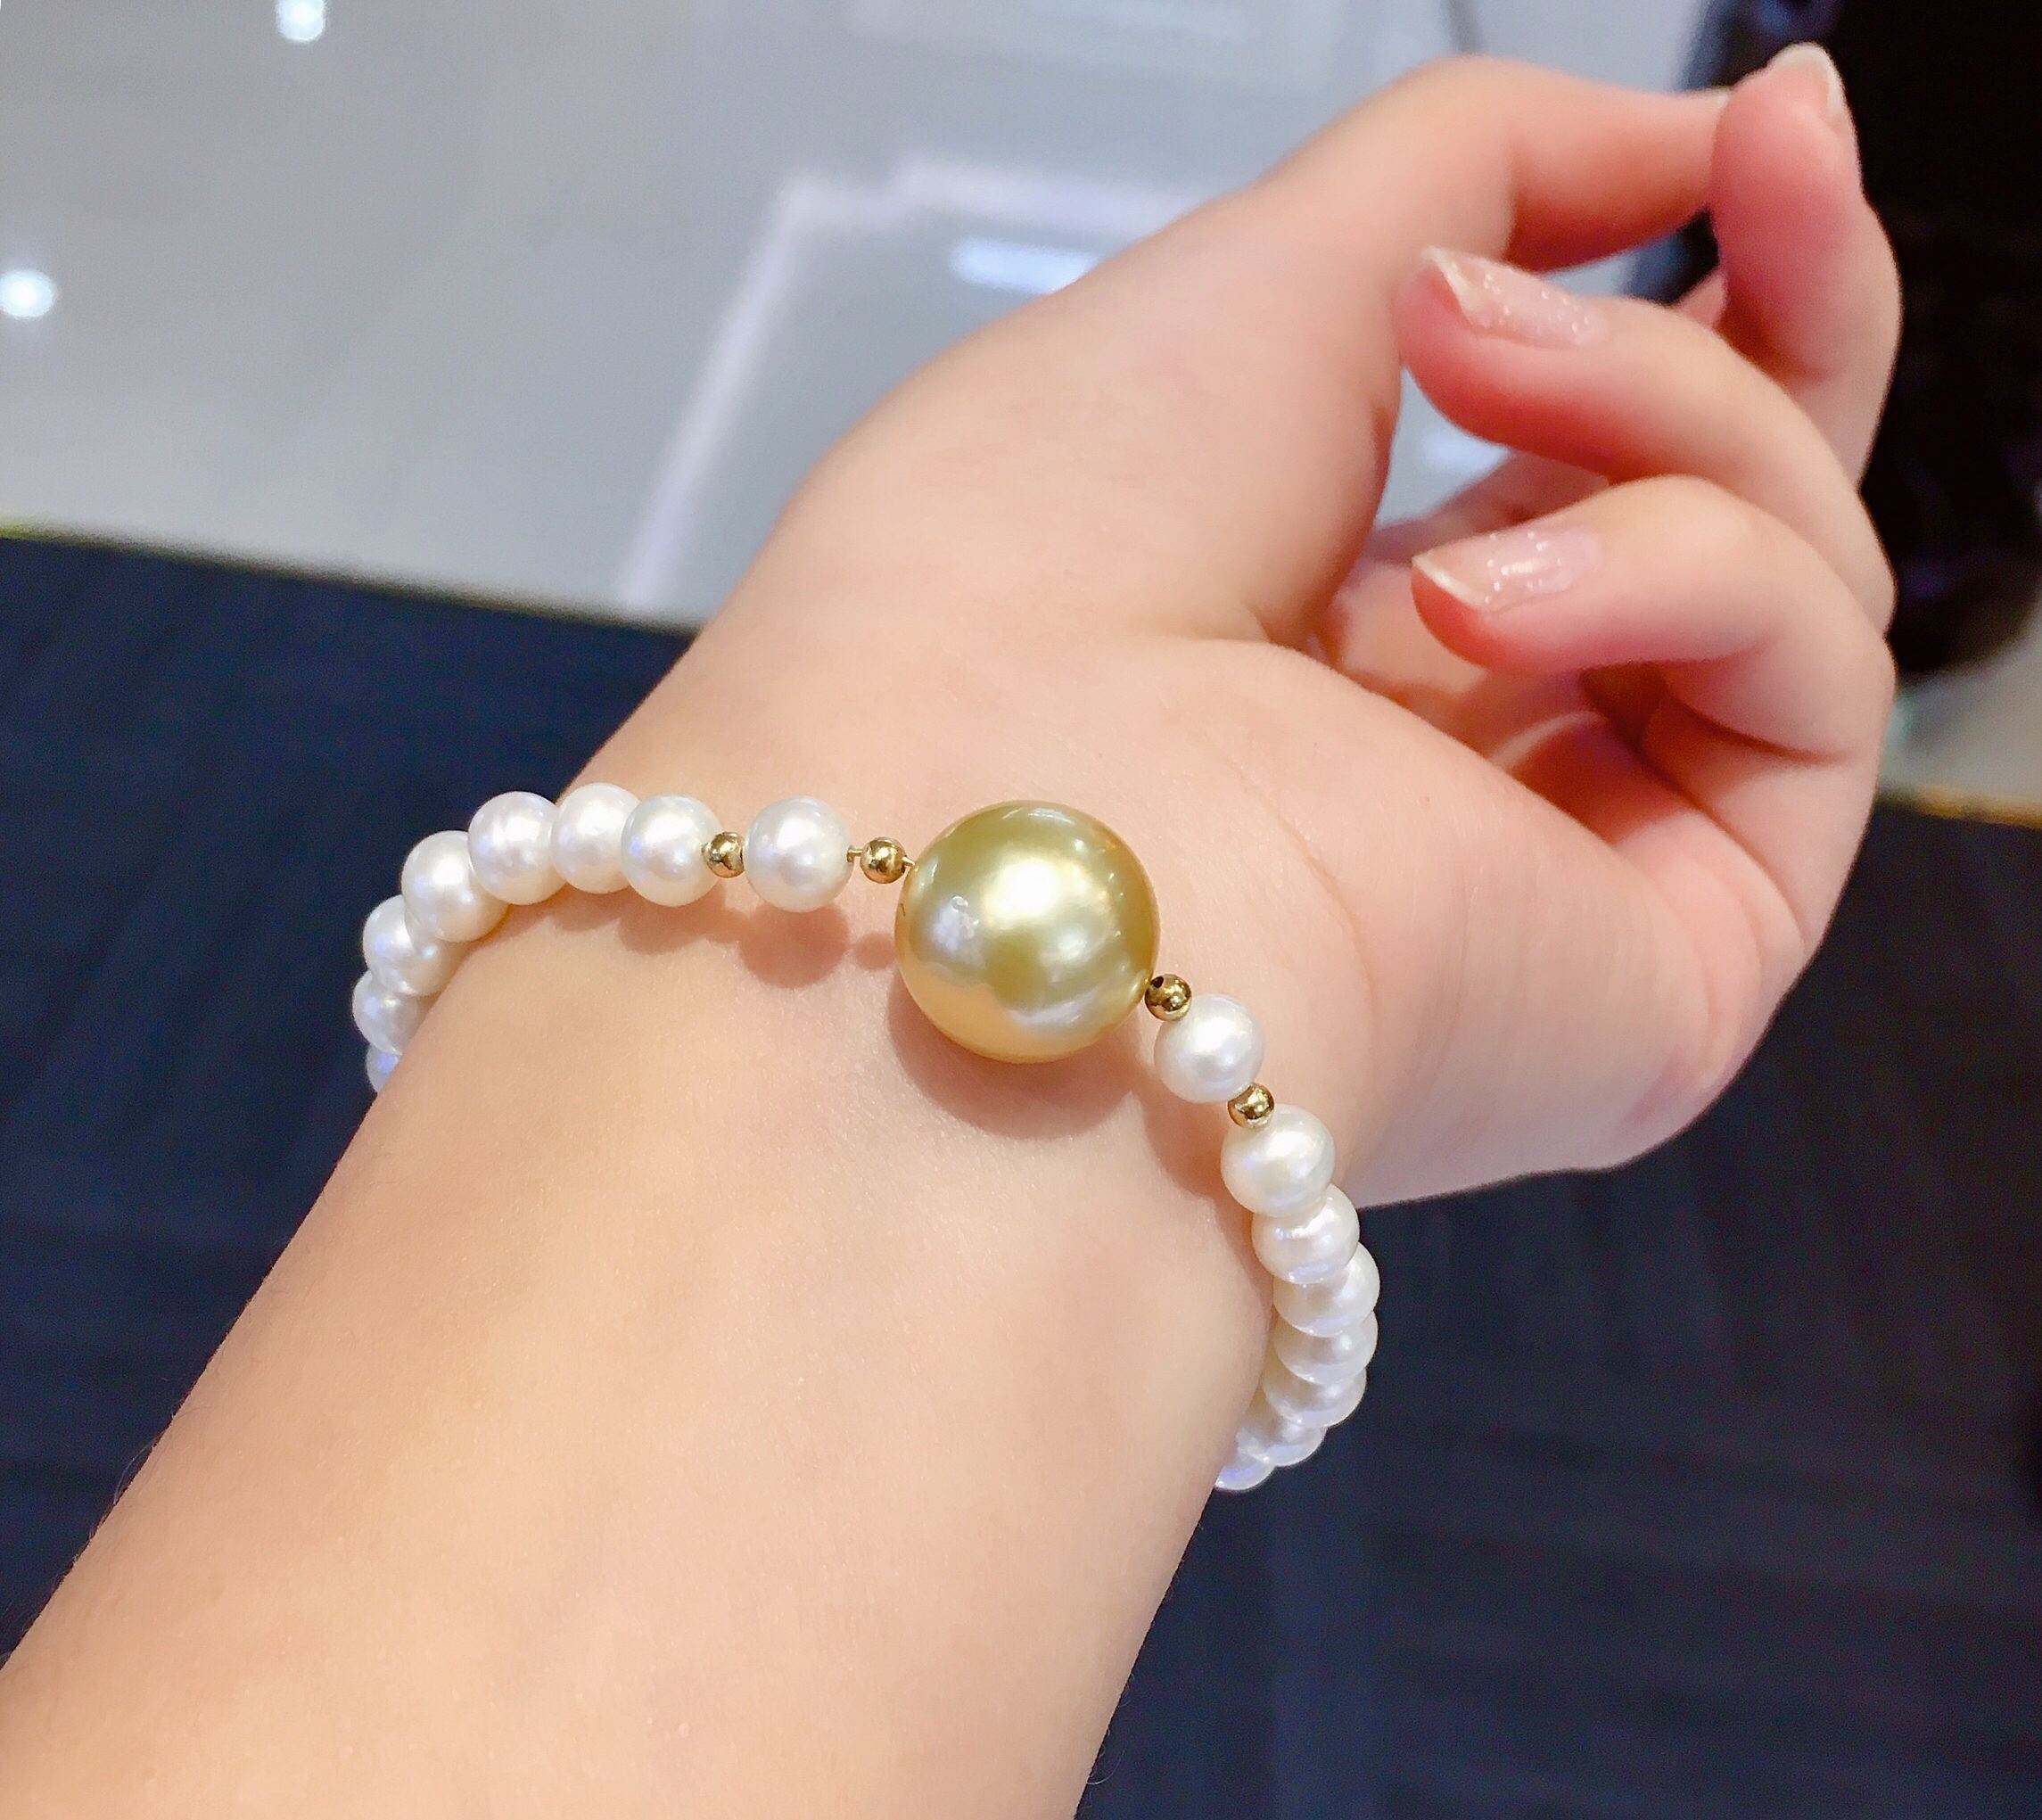 淡水珍珠手链增加一颗南洋金珠做点缀更是灵动活泼佩戴效果甜美可金